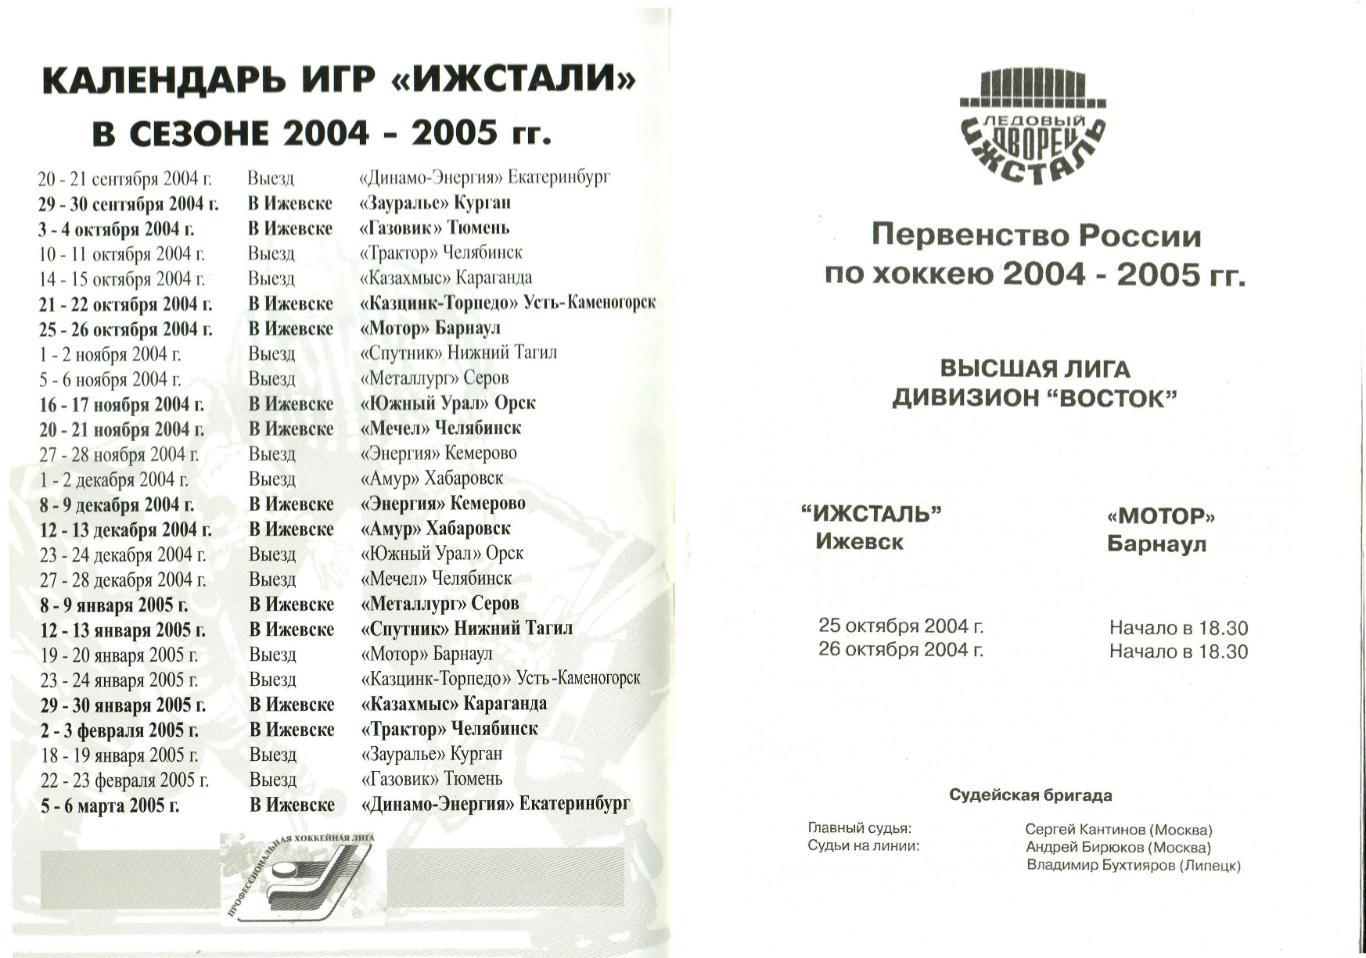 Ижсталь Ижевск – Мотор Барнаул 25-26.10.2004 Роберт Харисов 1